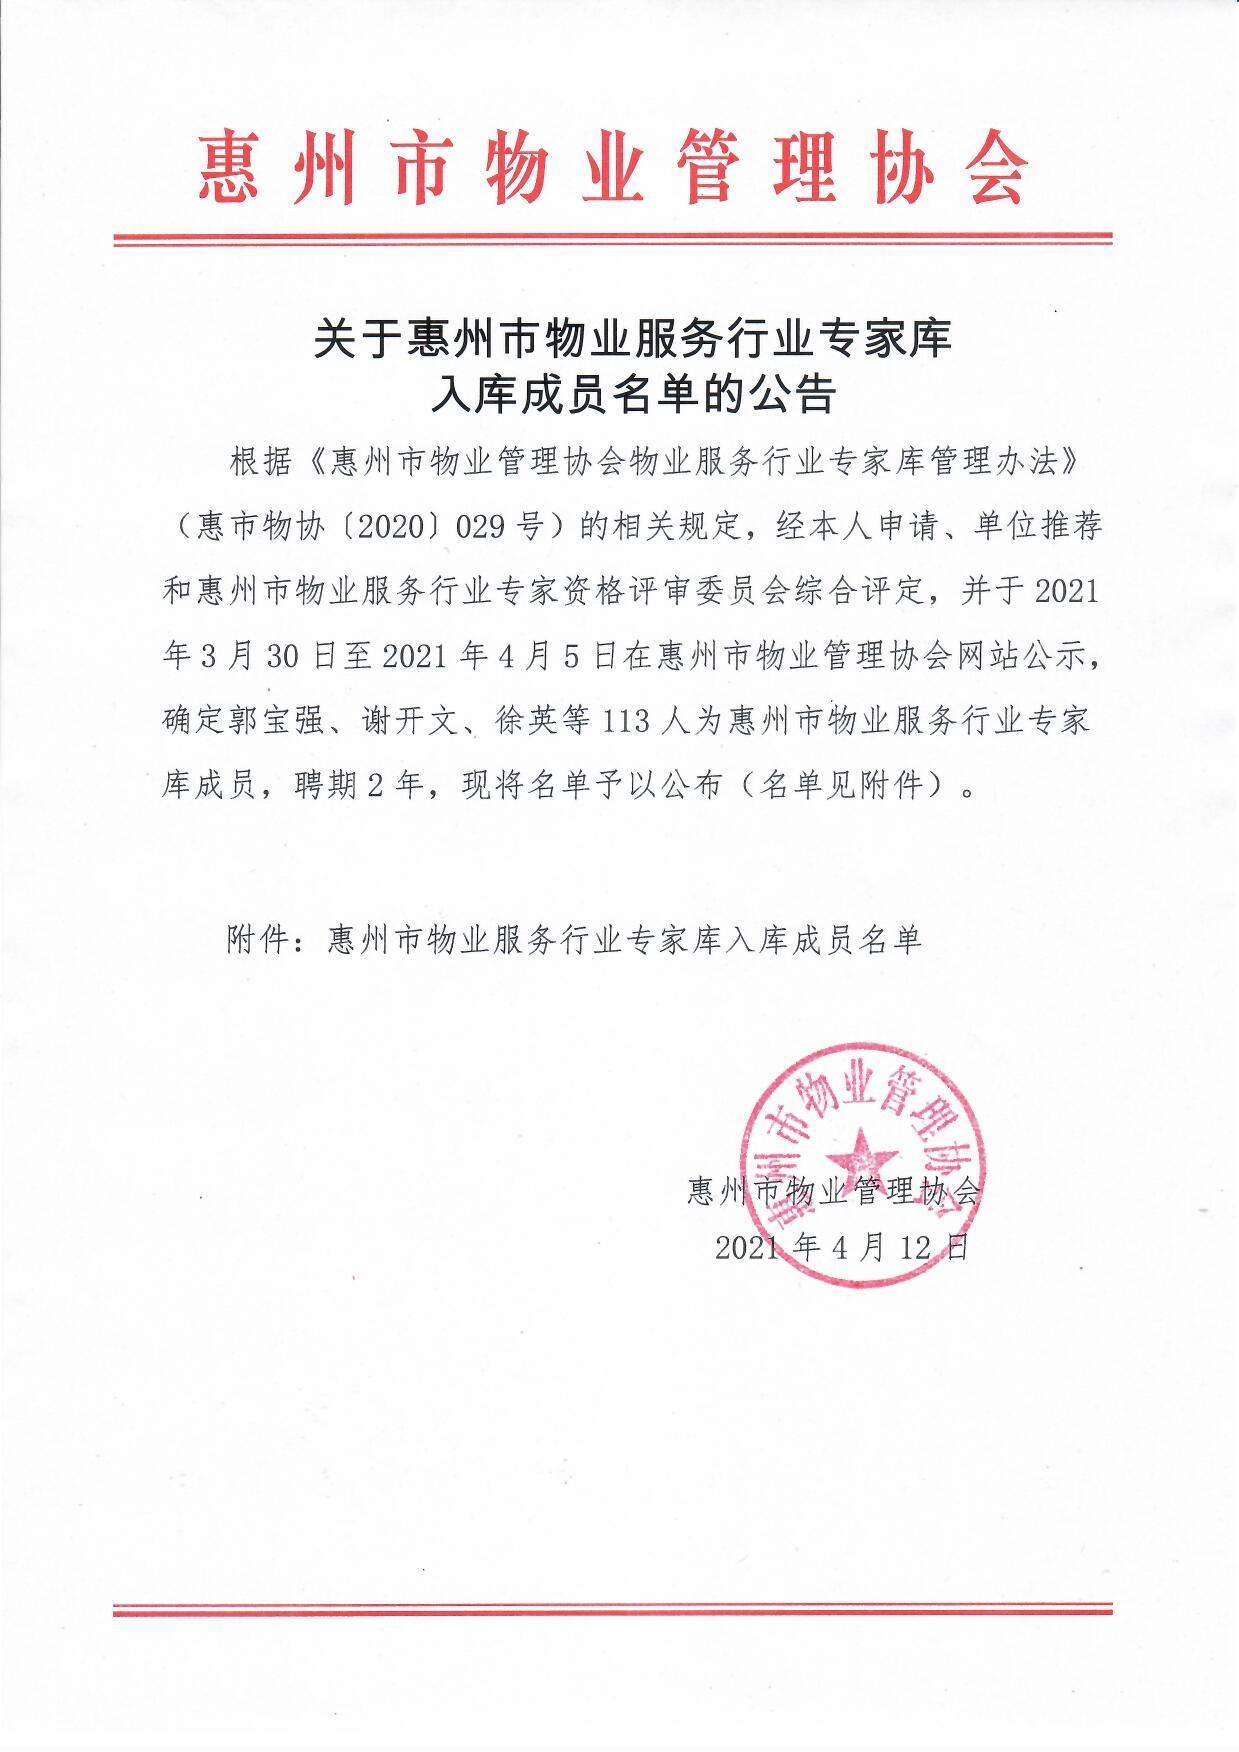 关于惠州市物业服务行业专家库入库成员名单的公告1.jpg